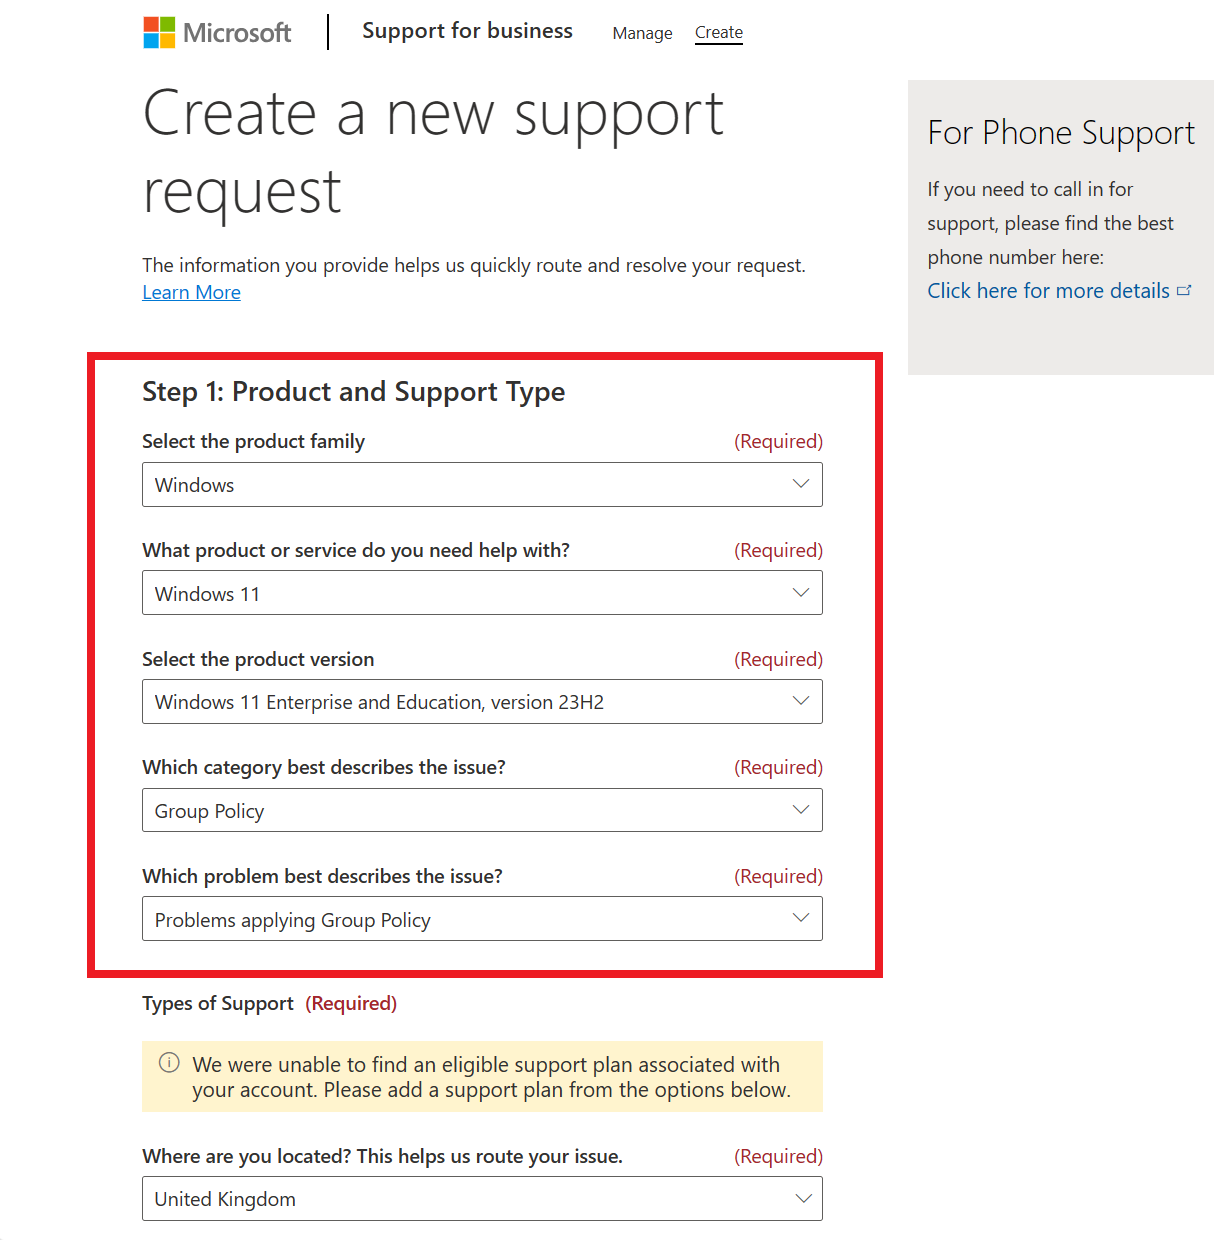 Captura de ecrã da página Criar um novo pedido de suporte, com o Windows 11 selecionado. Neste exemplo, não há tipos de suporte disponíveis.